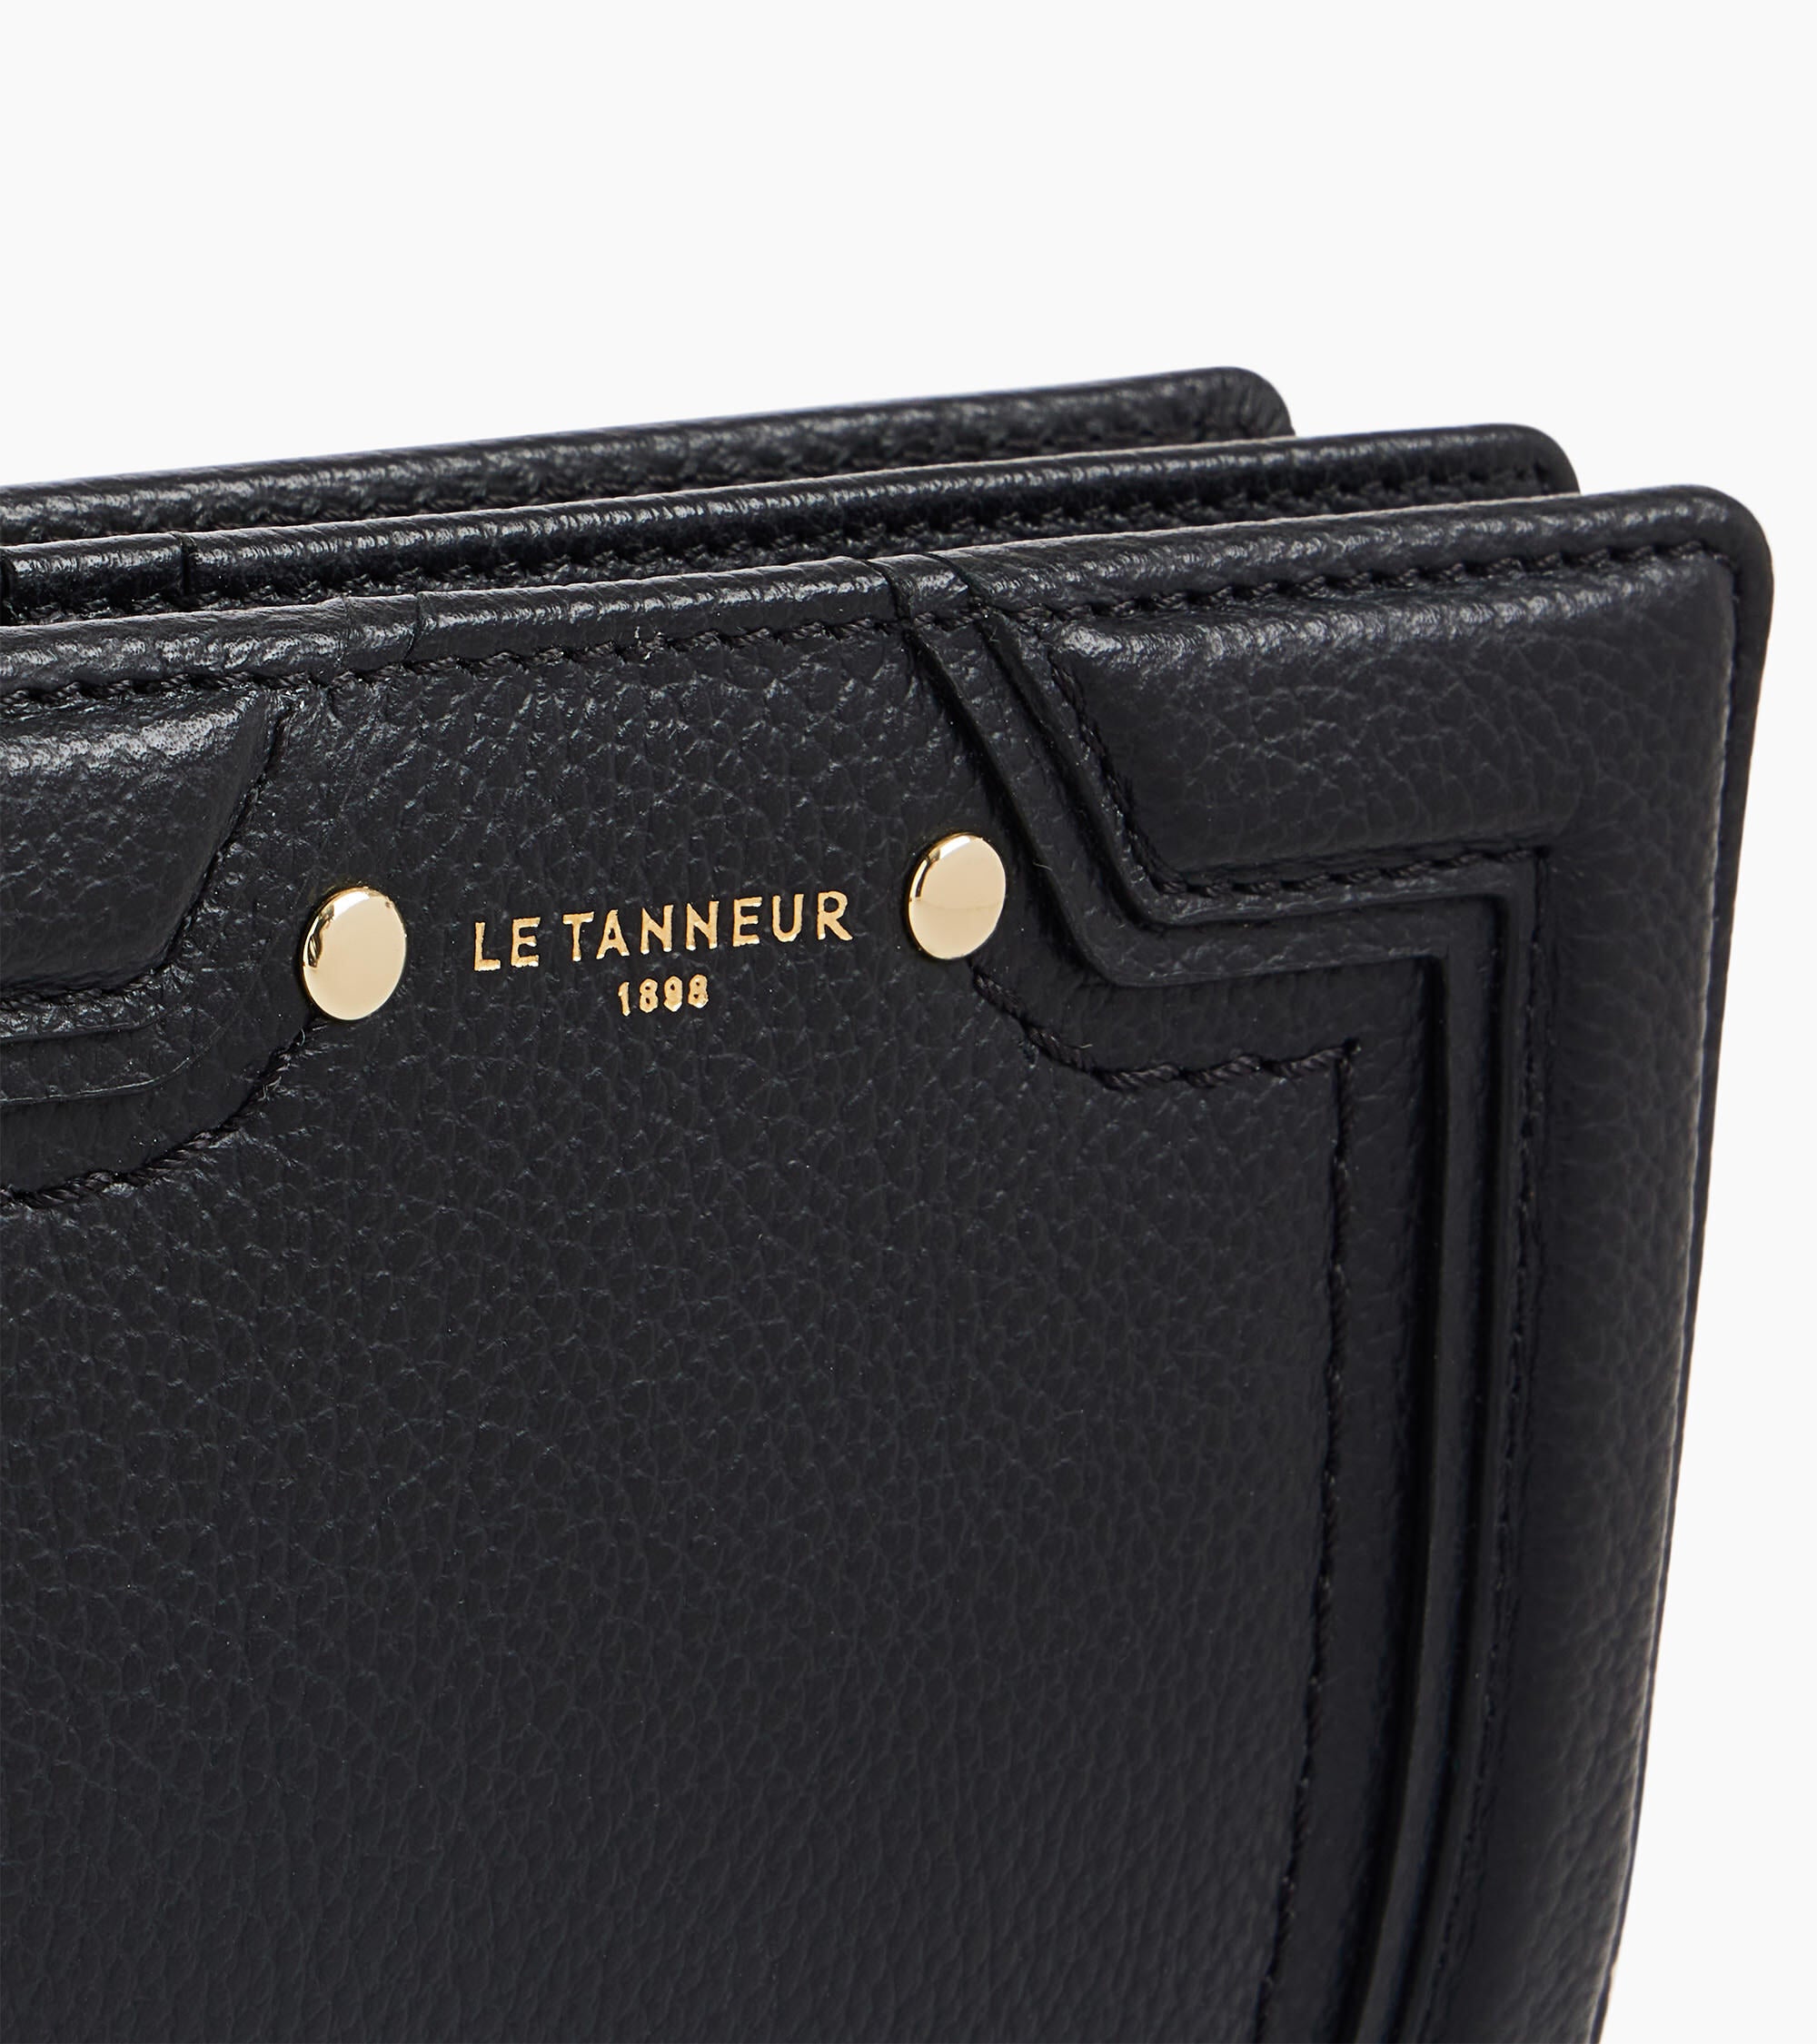 Ella medium grained leather wallet